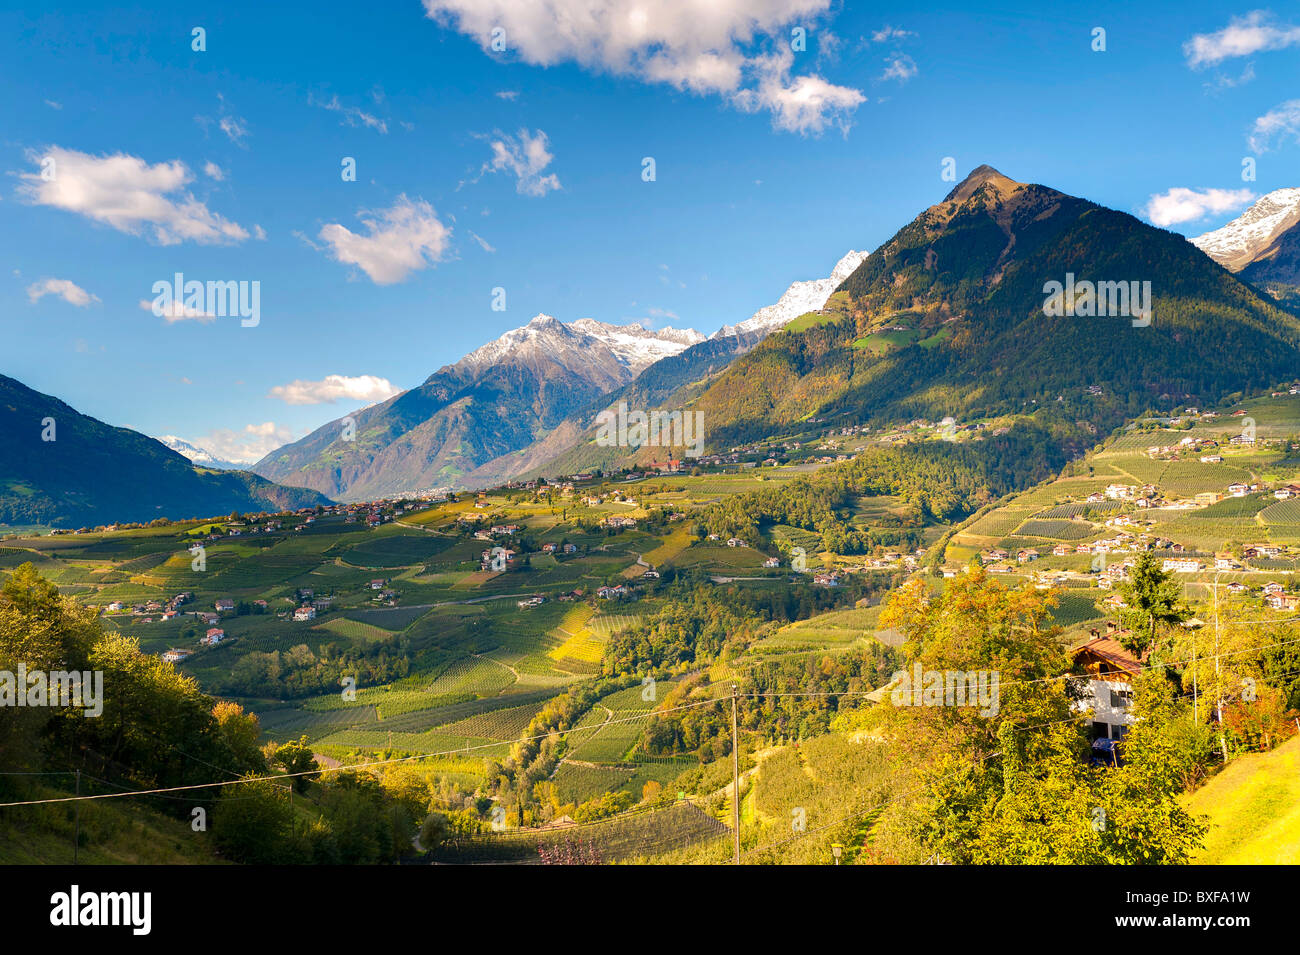 Vista del valle de la ciudad de Scena, Trentino Alto Adige, Italia Foto de stock